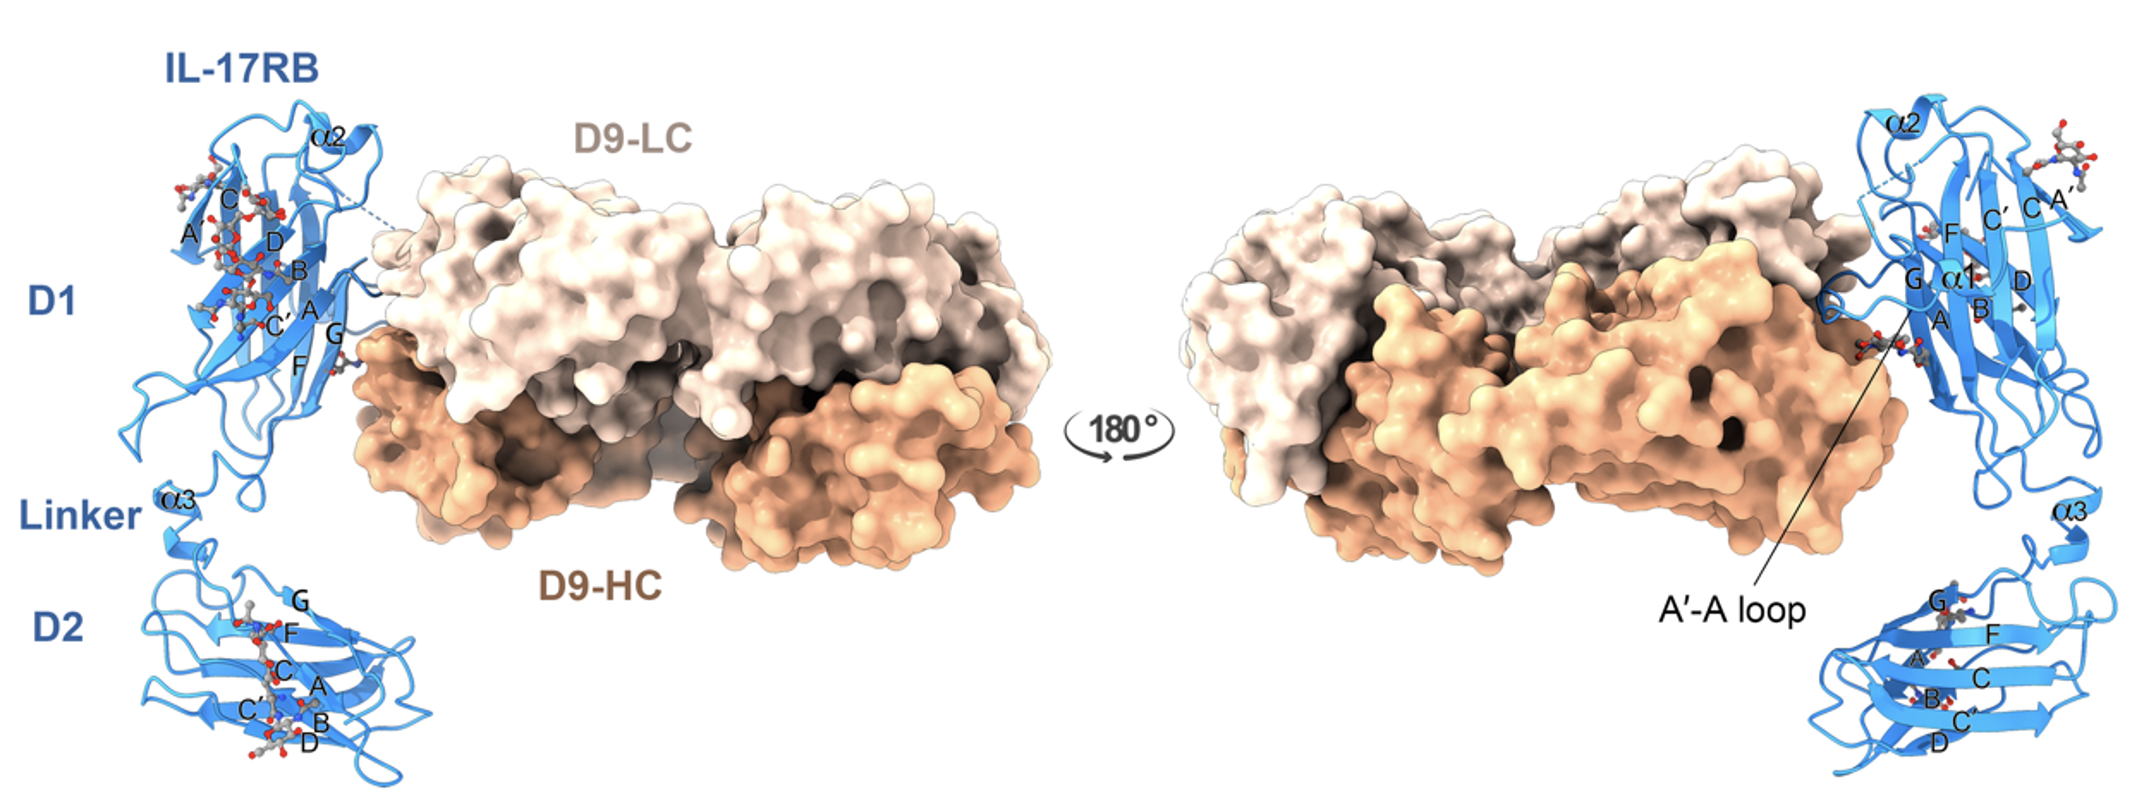 首揭IL-17RB抗原晶體結構 單株抗體邁向人類化